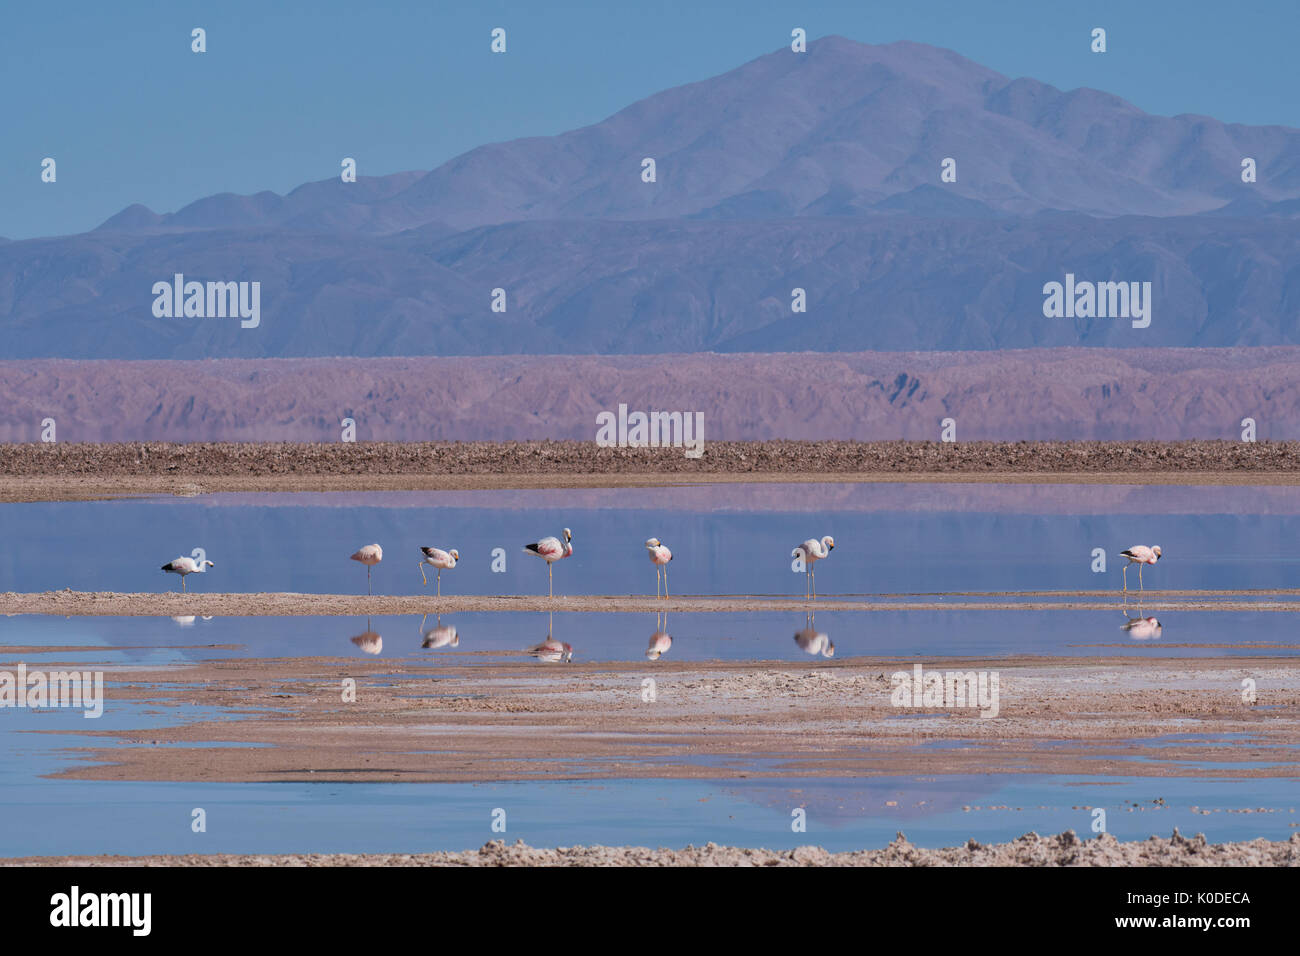 América del Sur, de los Andes, Atacama, San Pedro de Atacama, el Salar de Atacama, Flamingo preservar Foto de stock